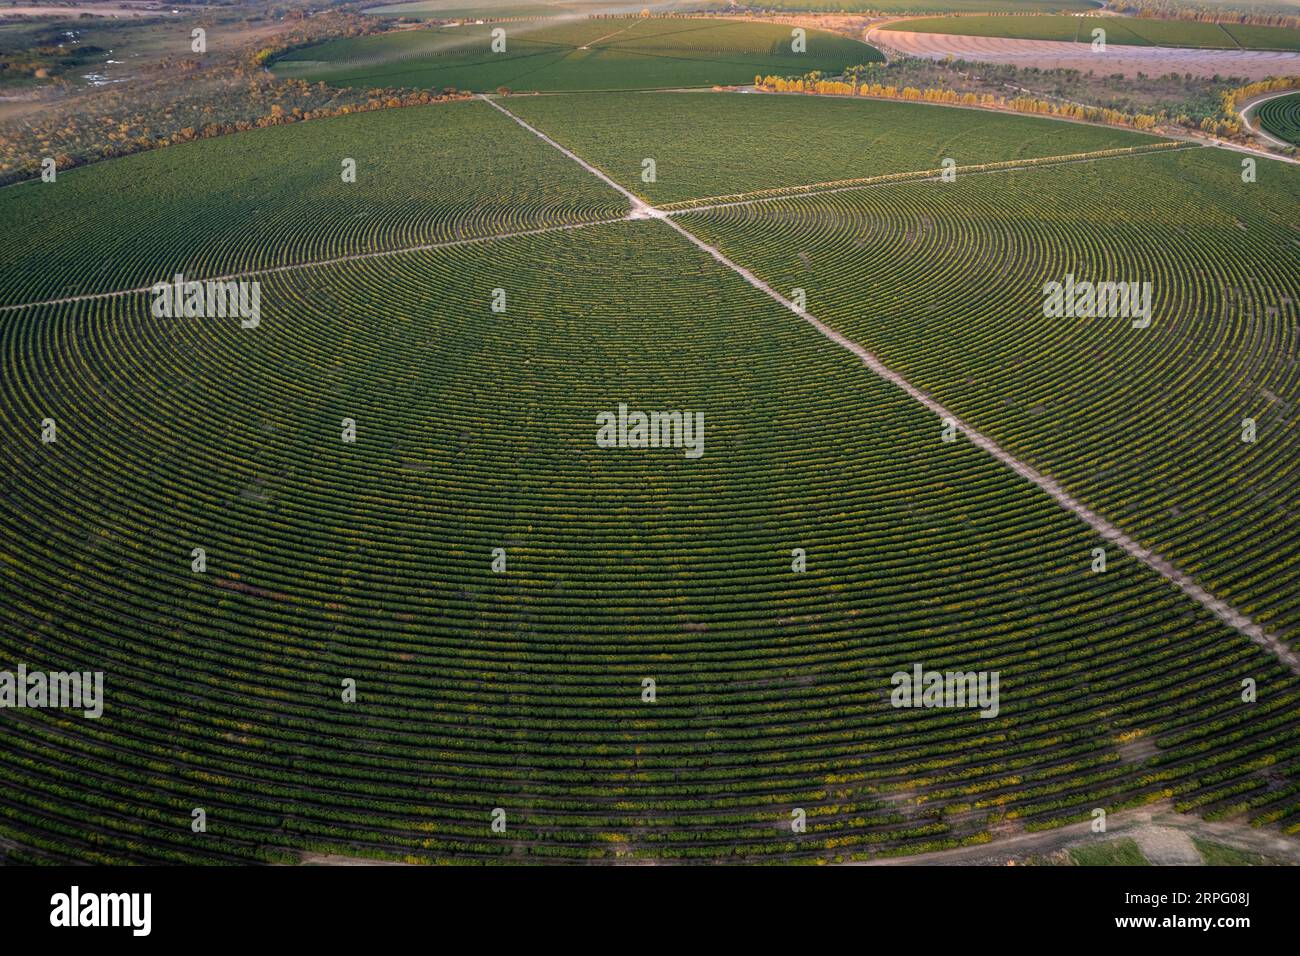 Luftaufnahme der riesigen Kaffeeplantage auf modernen landwirtschaftlichen Flächen an sonnigen Sommertagen in Cerrado von Brasilien. Konzept der Landwirtschaft, Ökologie, Umwelt Stockfoto